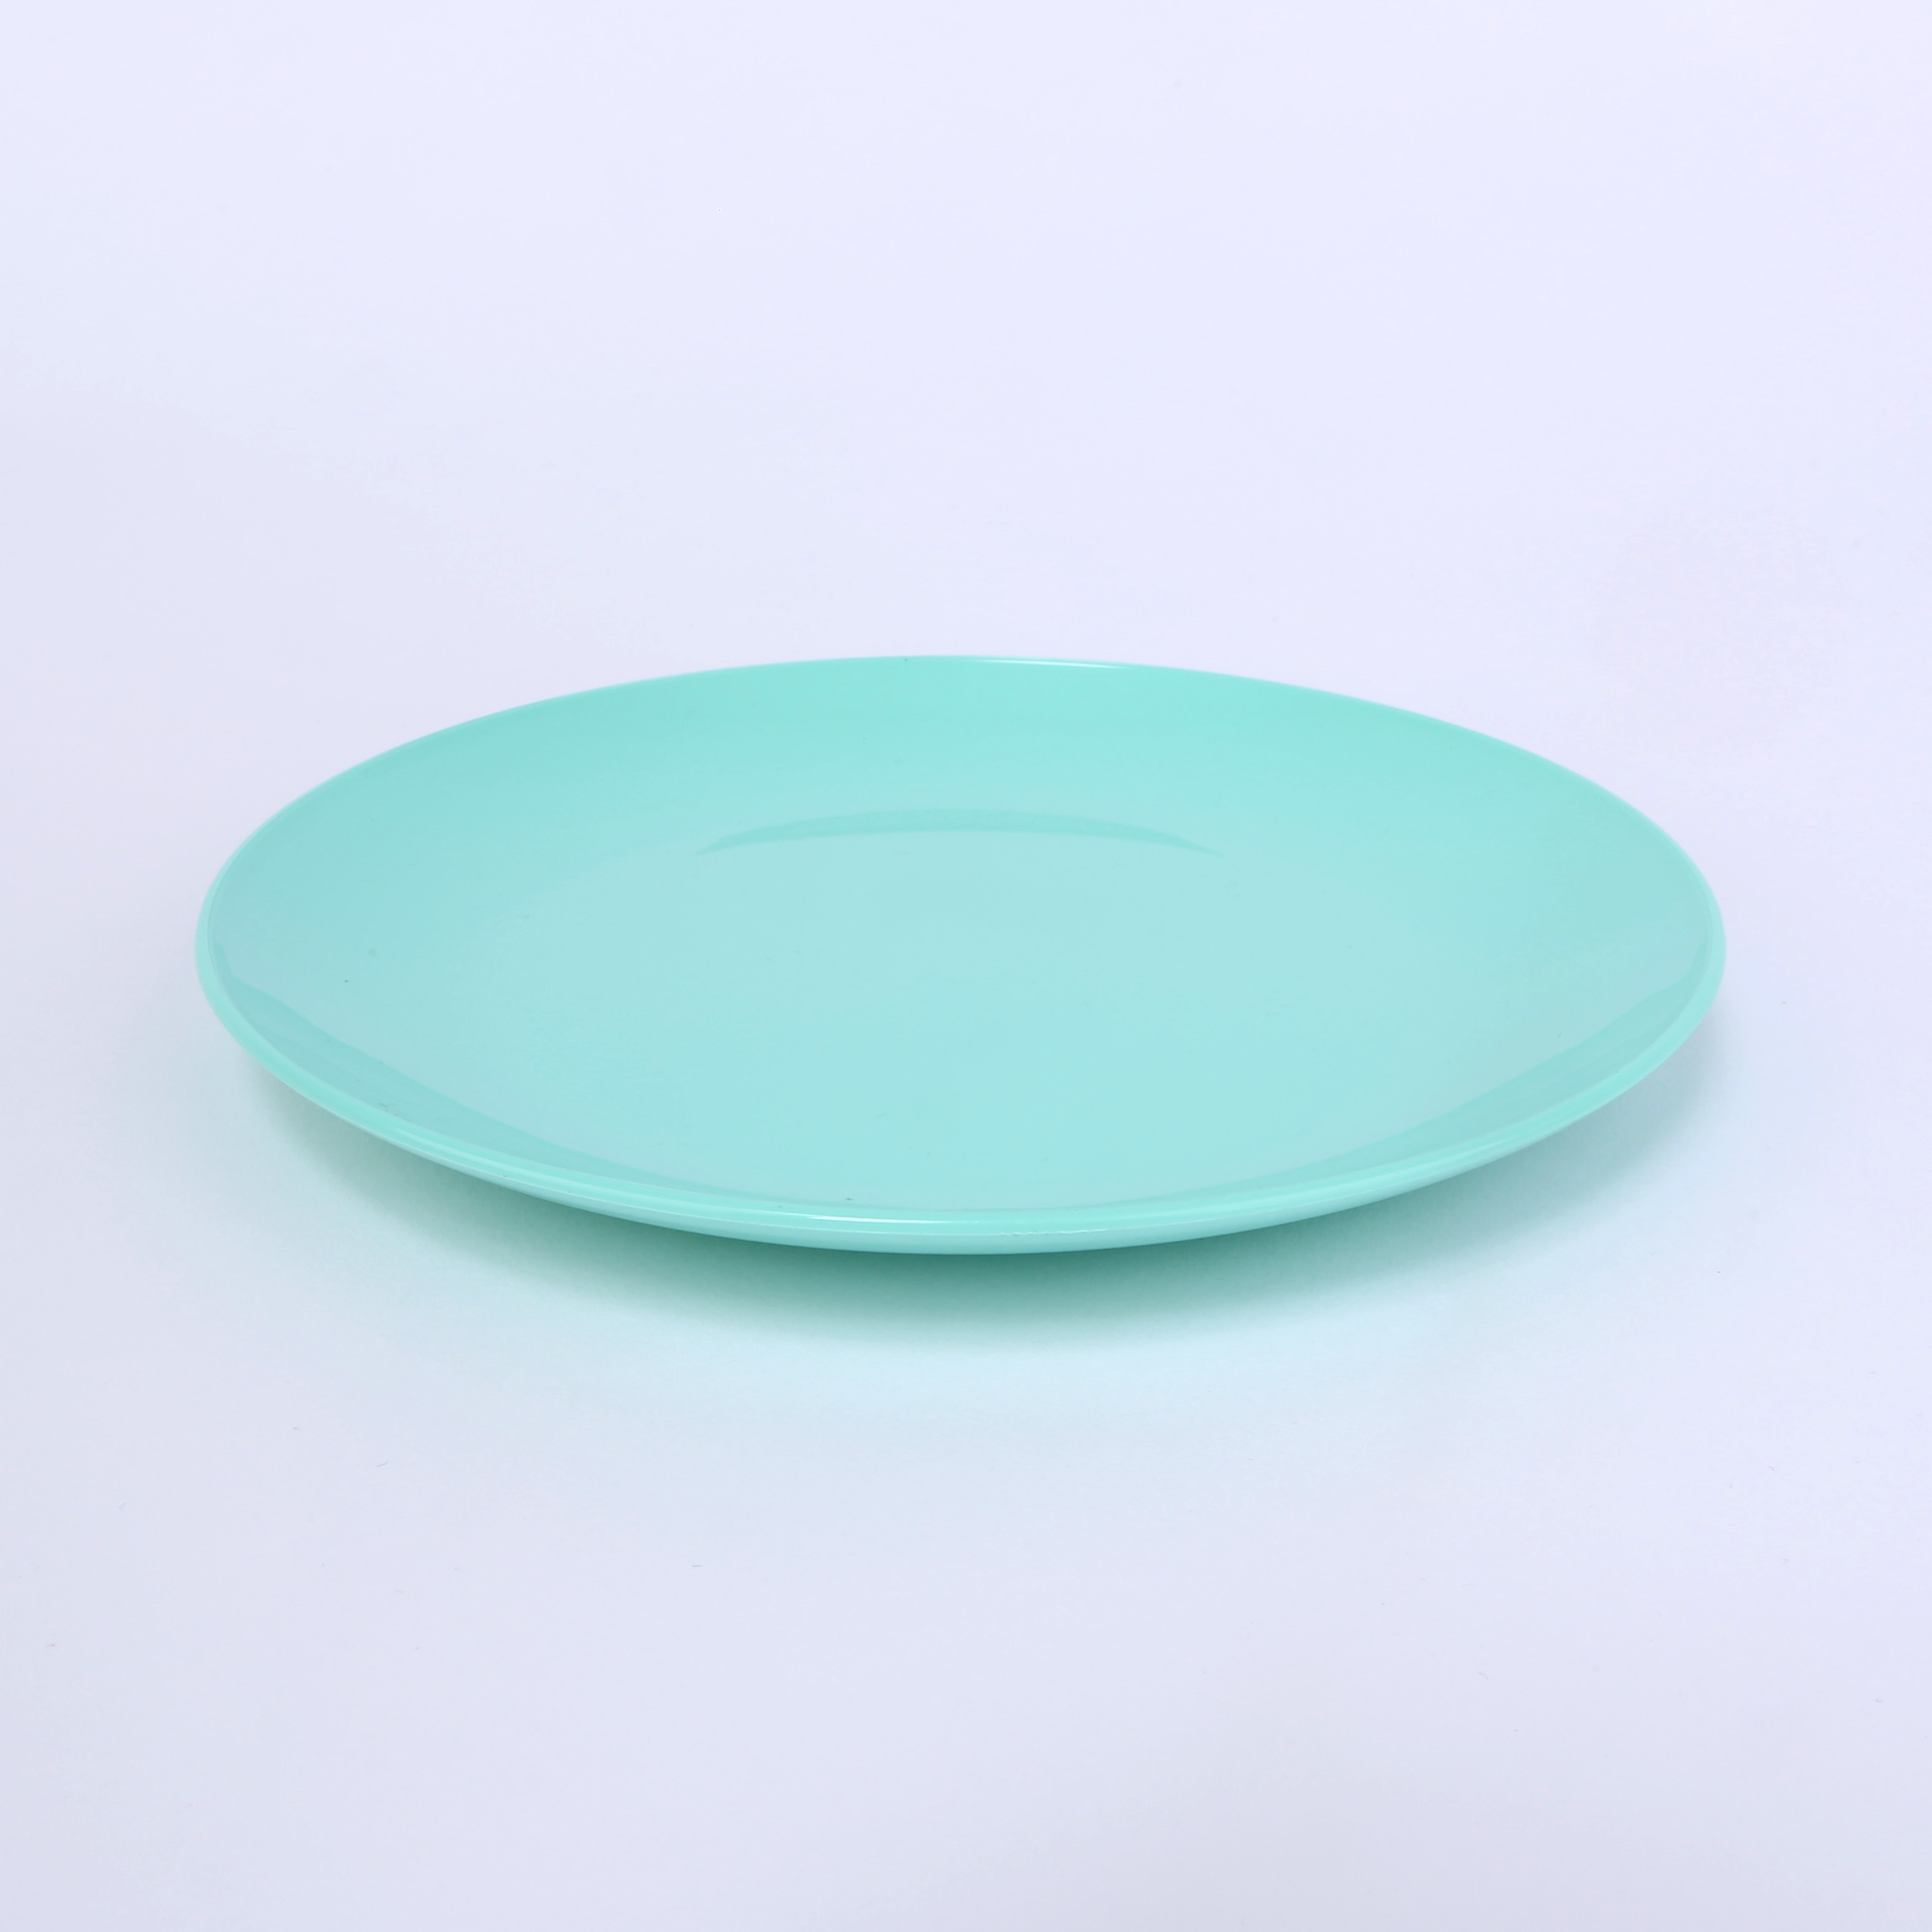 vaLon Zephyr Dessertteller 19 cm aus schadstofffreiem Kunststoff in der Farbe pastellgrün.